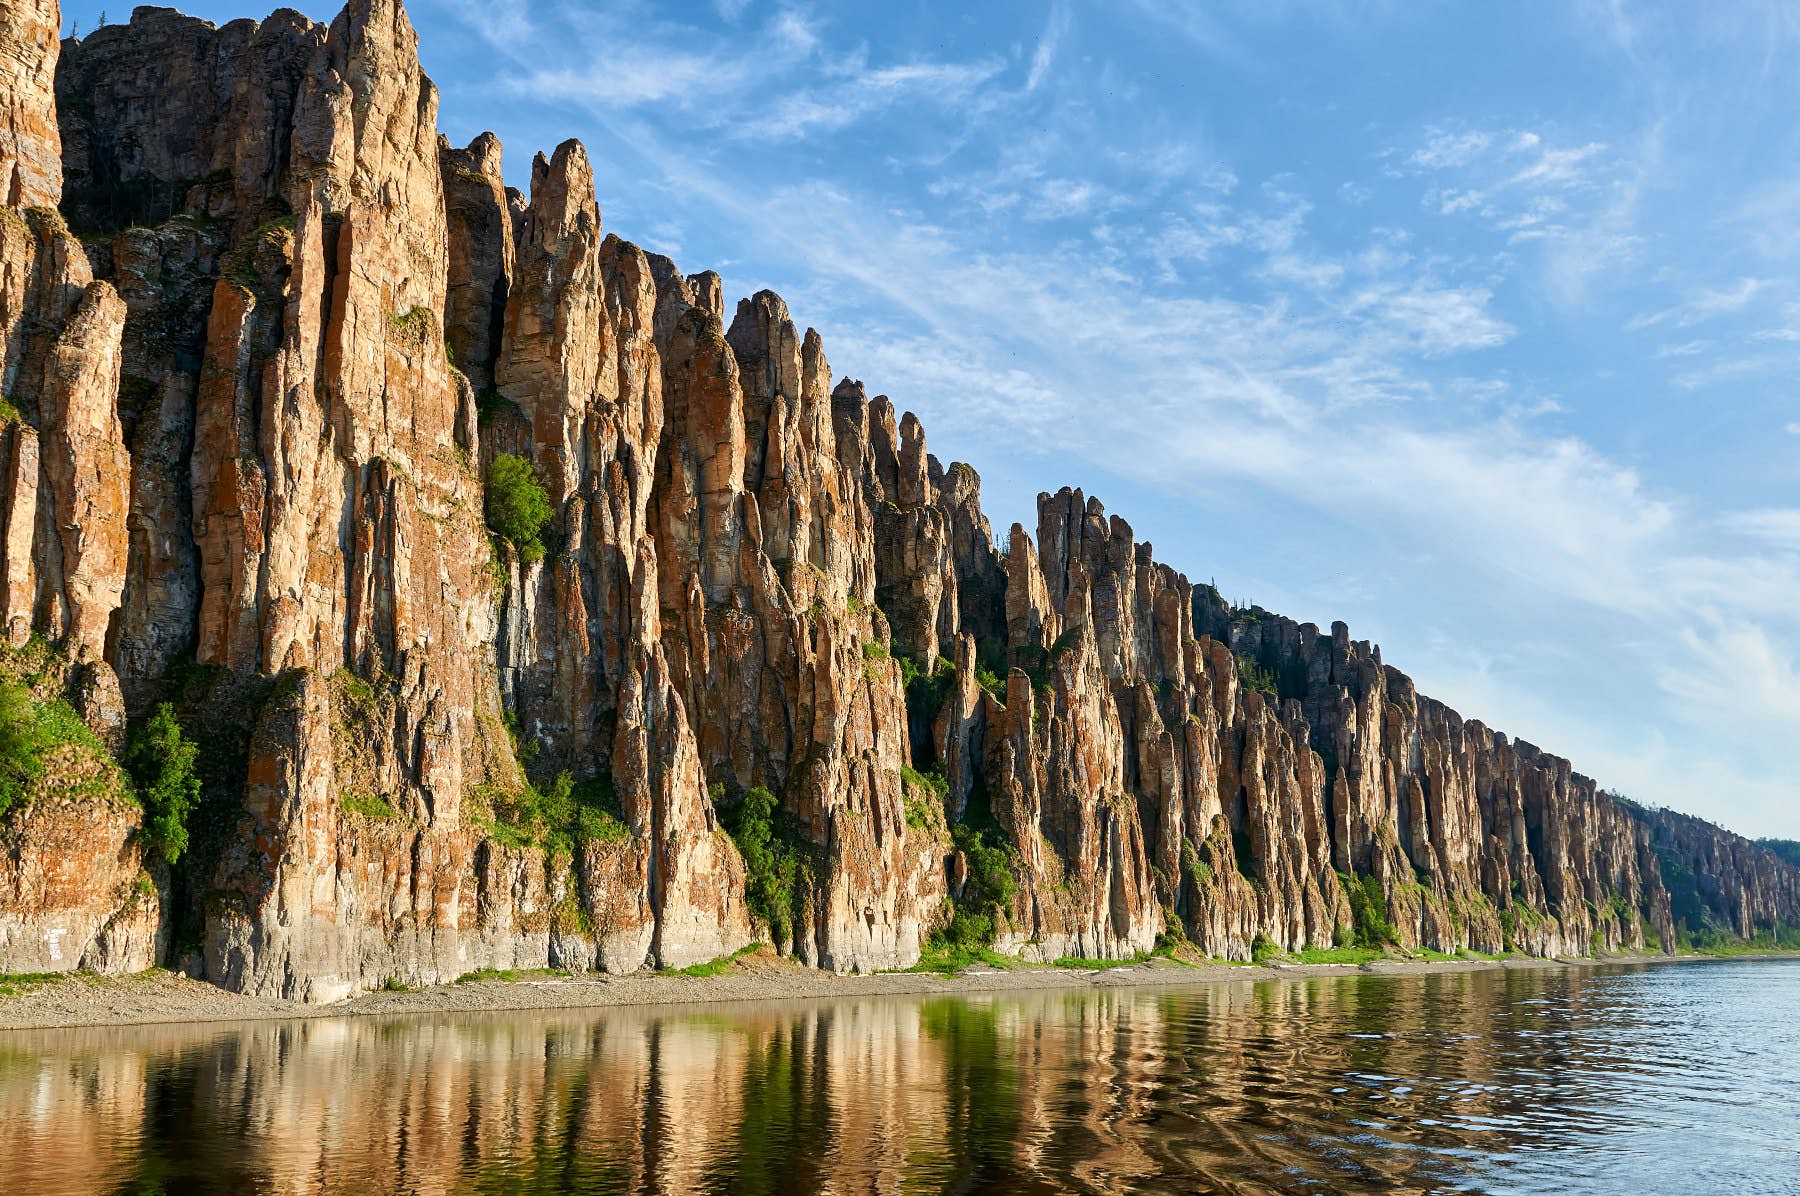 Chùm ảnh: Sững sờ trước kỳ quan cột đá thiên nhiên nổi tiếng của Nga